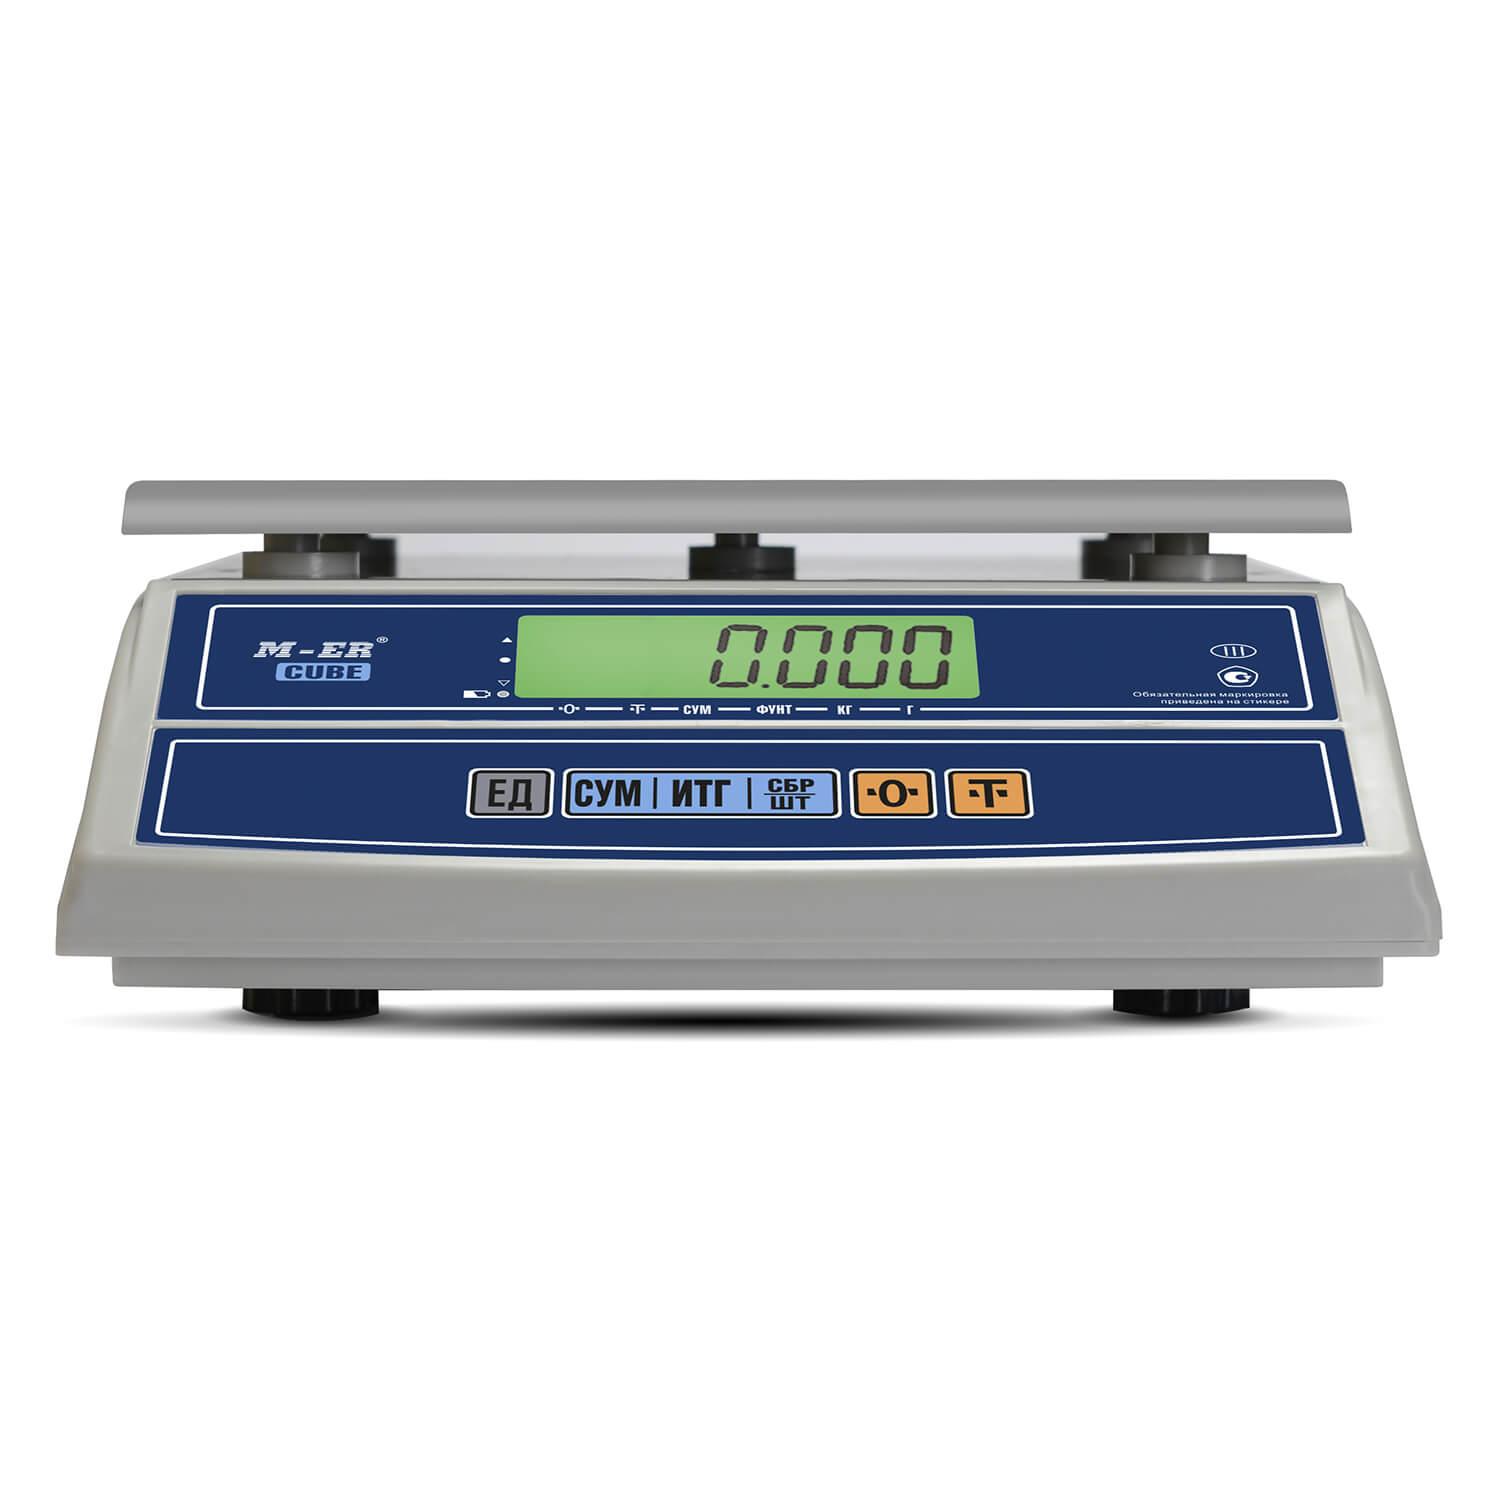 Фасовочные настольные весы M-ER 326 AF-32.5 "Cube" LCD (3054)